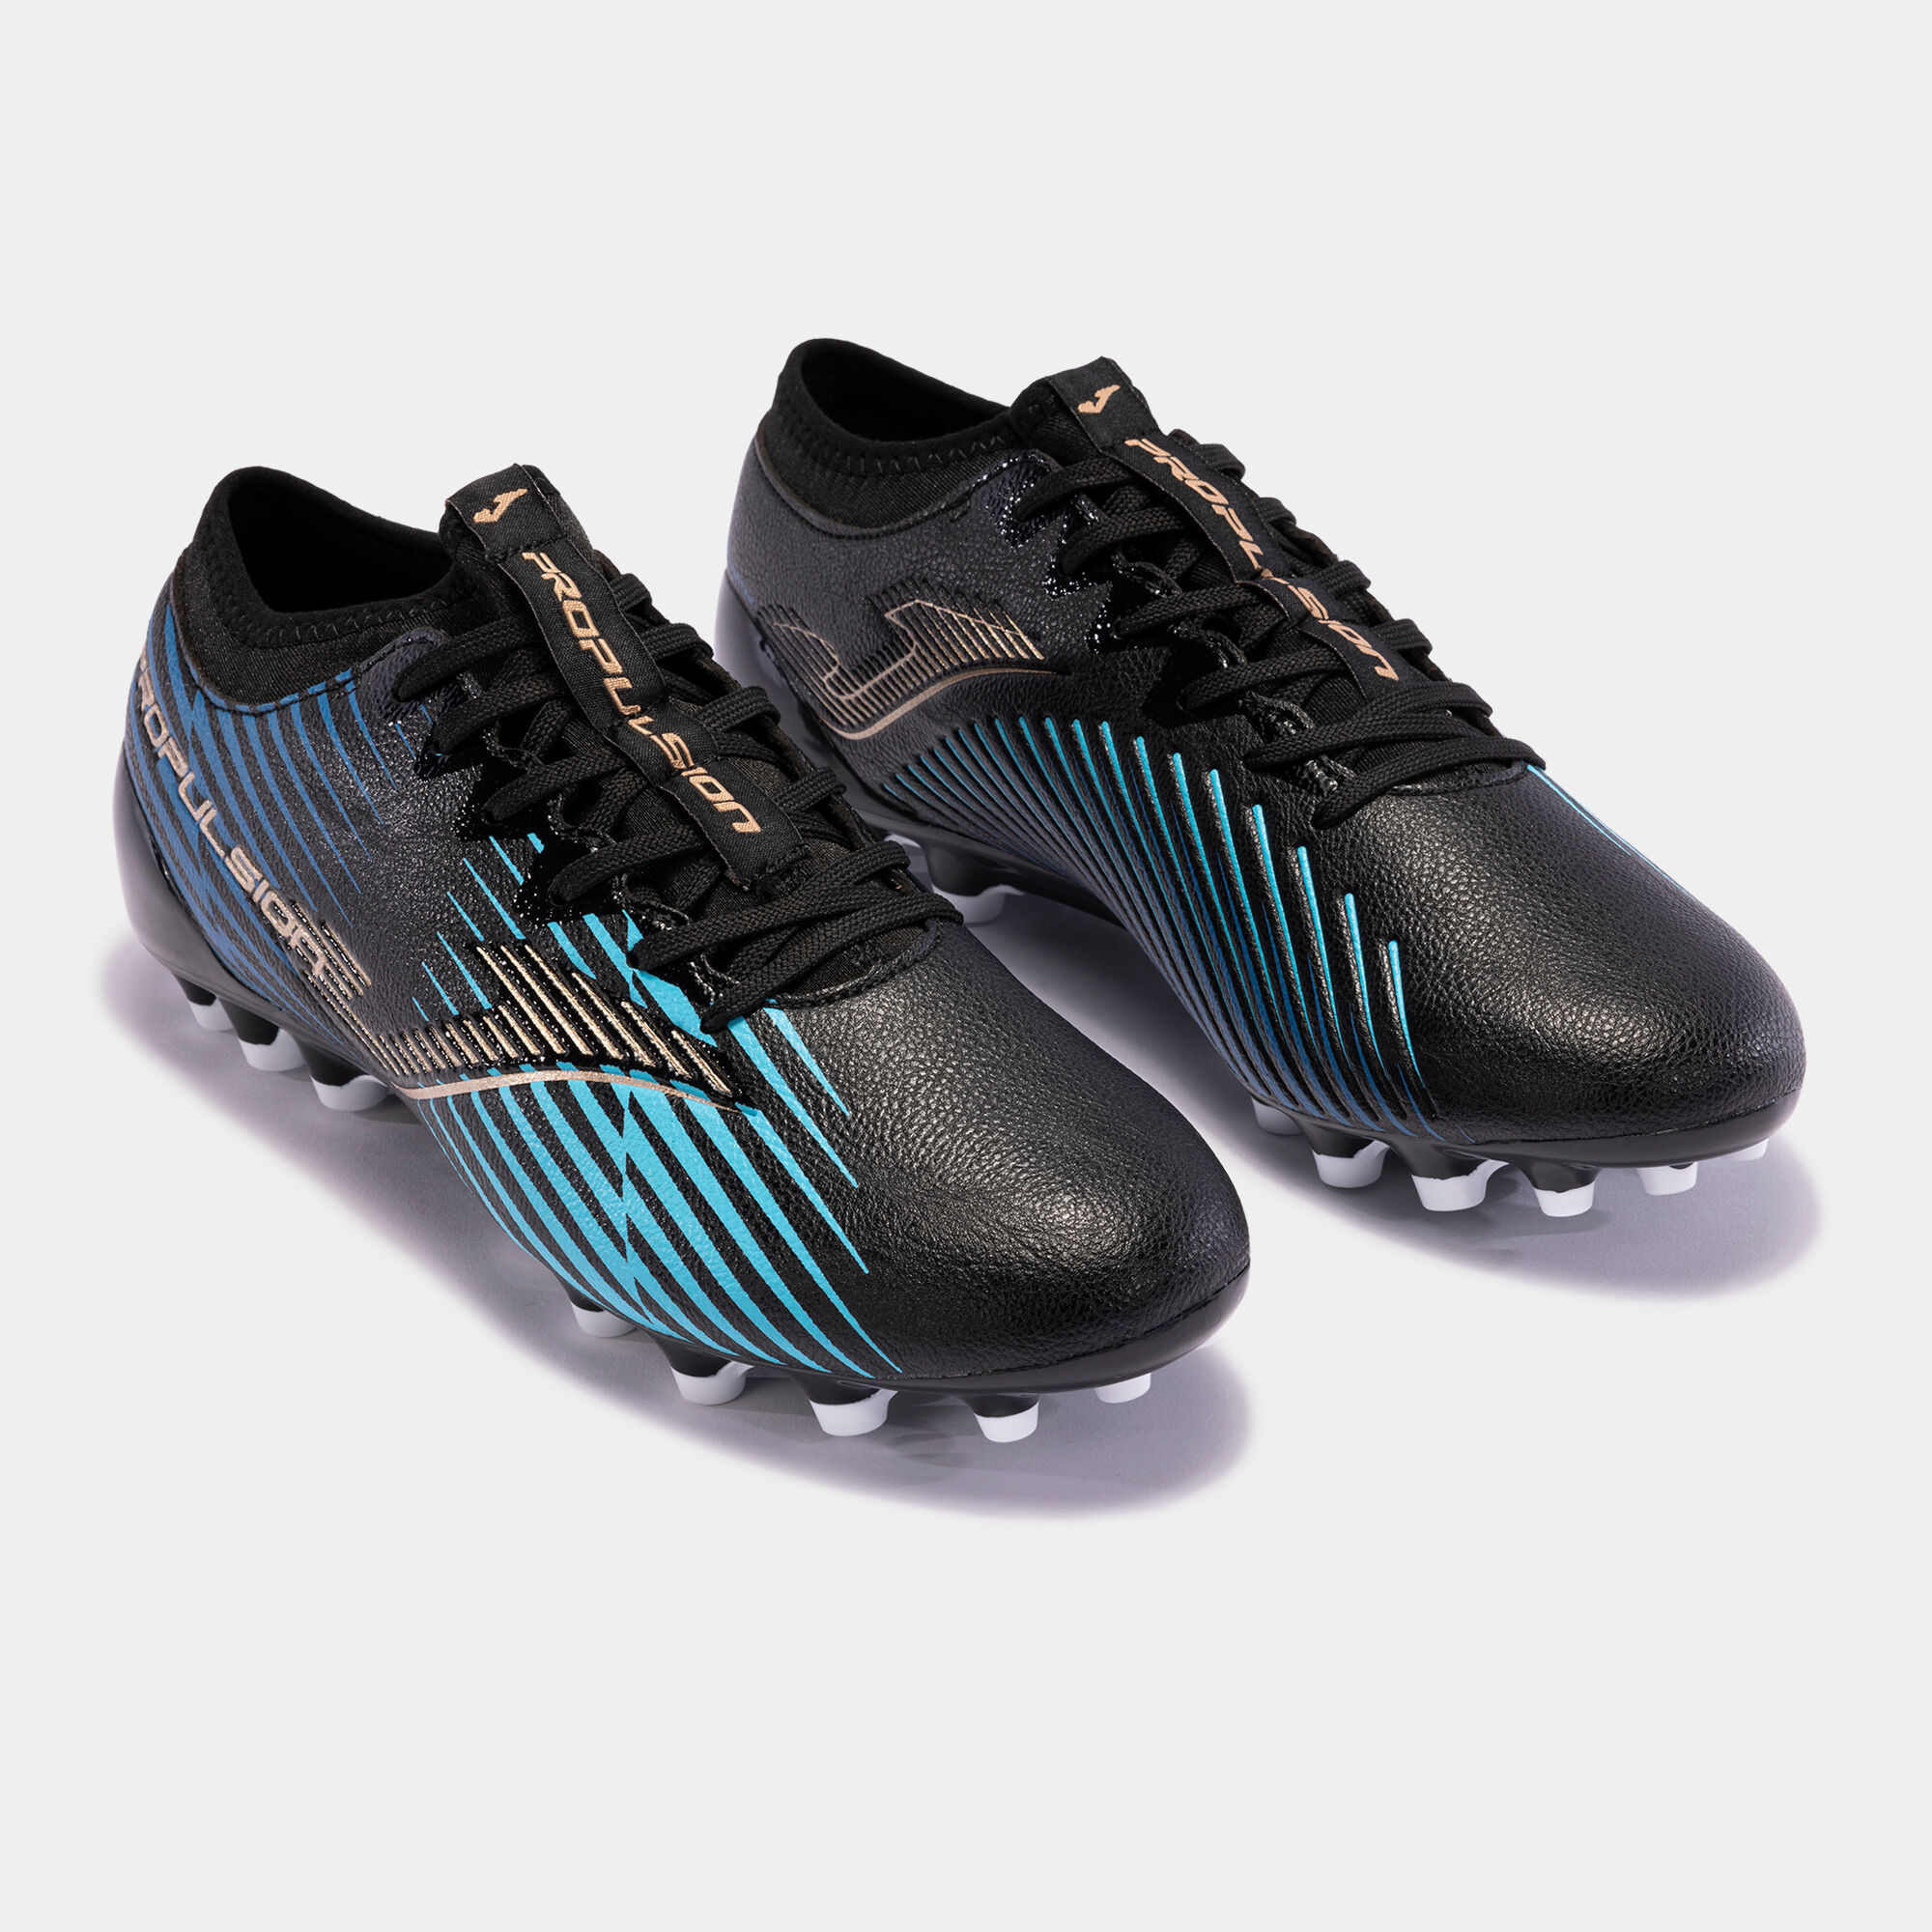 Buty piłkarskie Propulsion Cup 23 sztuczna trawa AG czarny niebieski